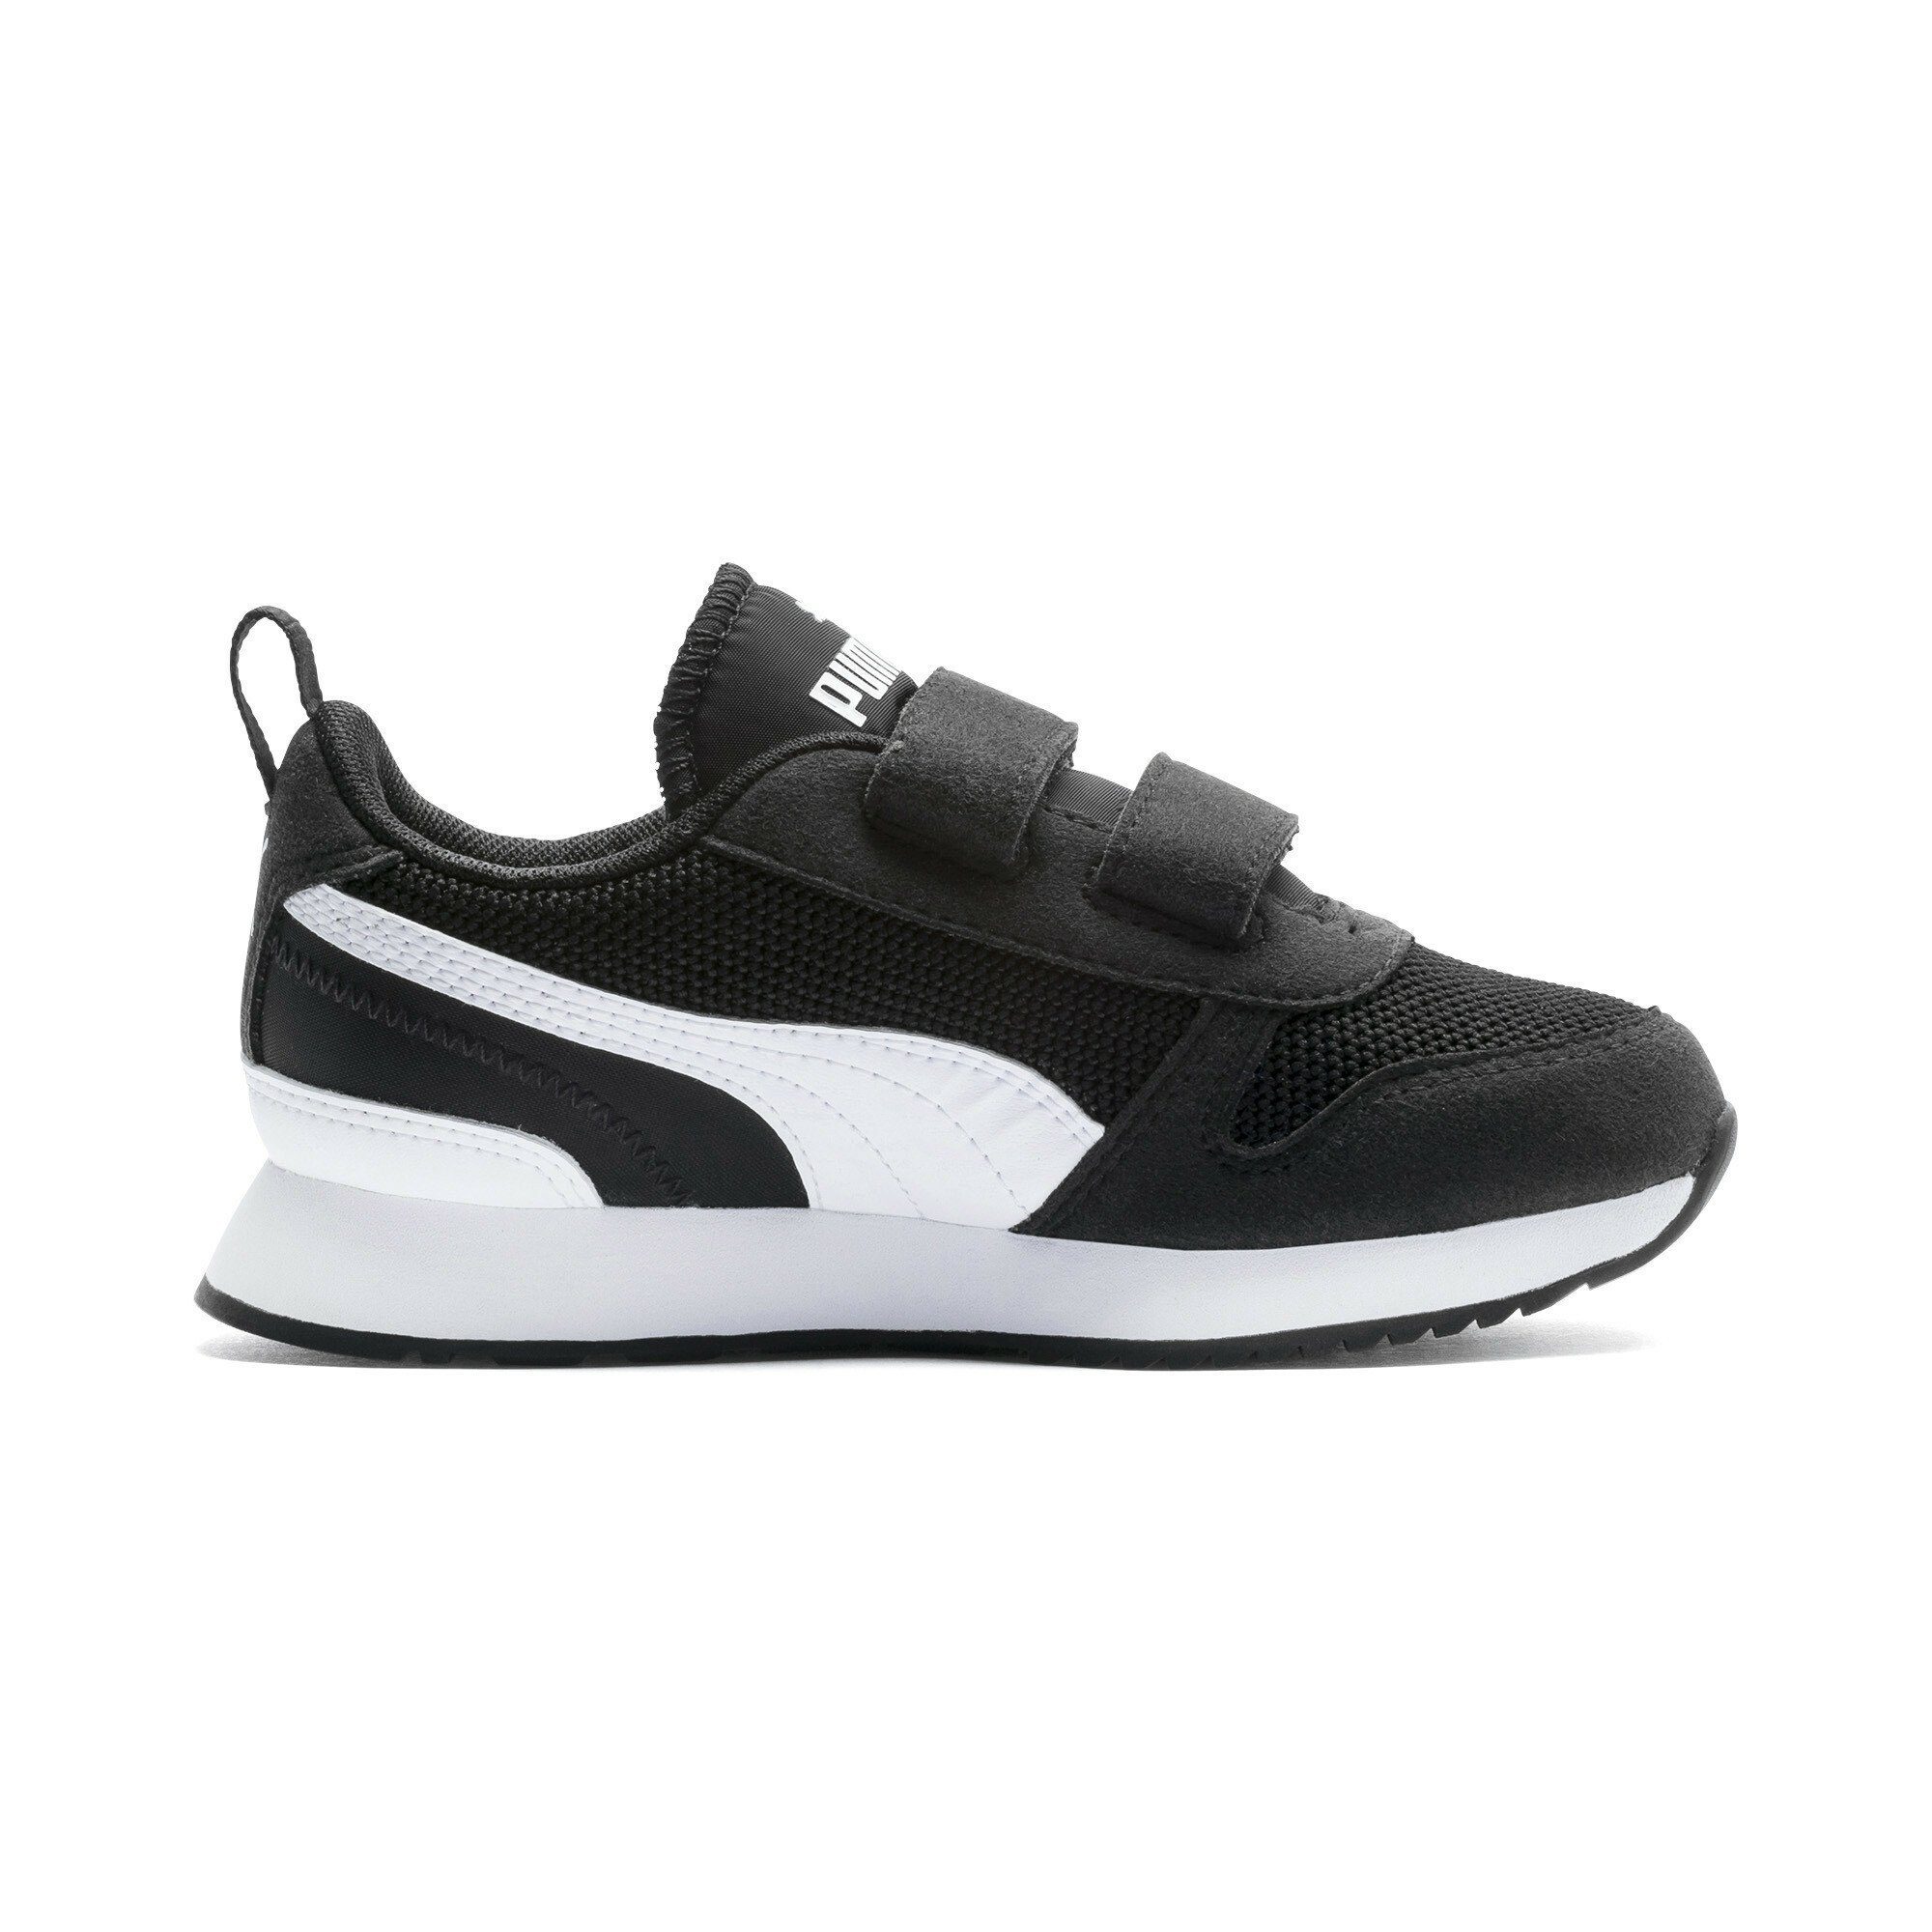 Jugendliche PUMA Laufschuh Black White Sneaker R78